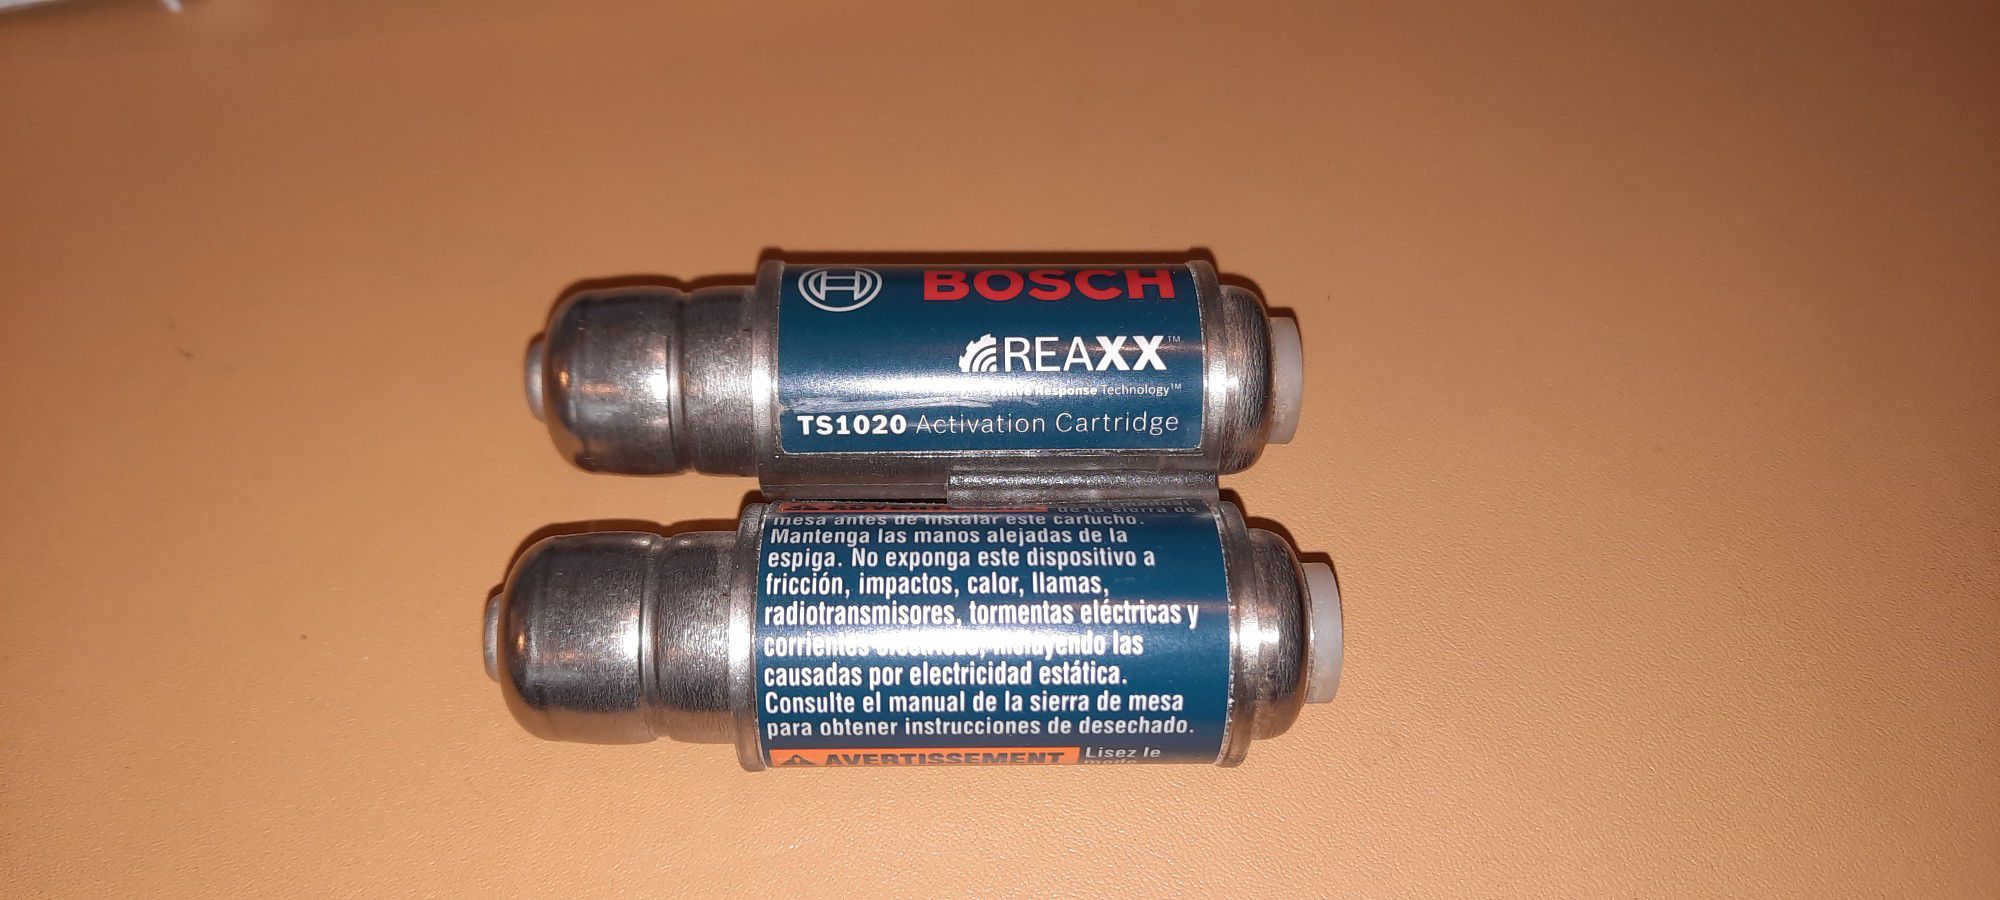 Bosch Reaxx TS1020 Activation Cartridge